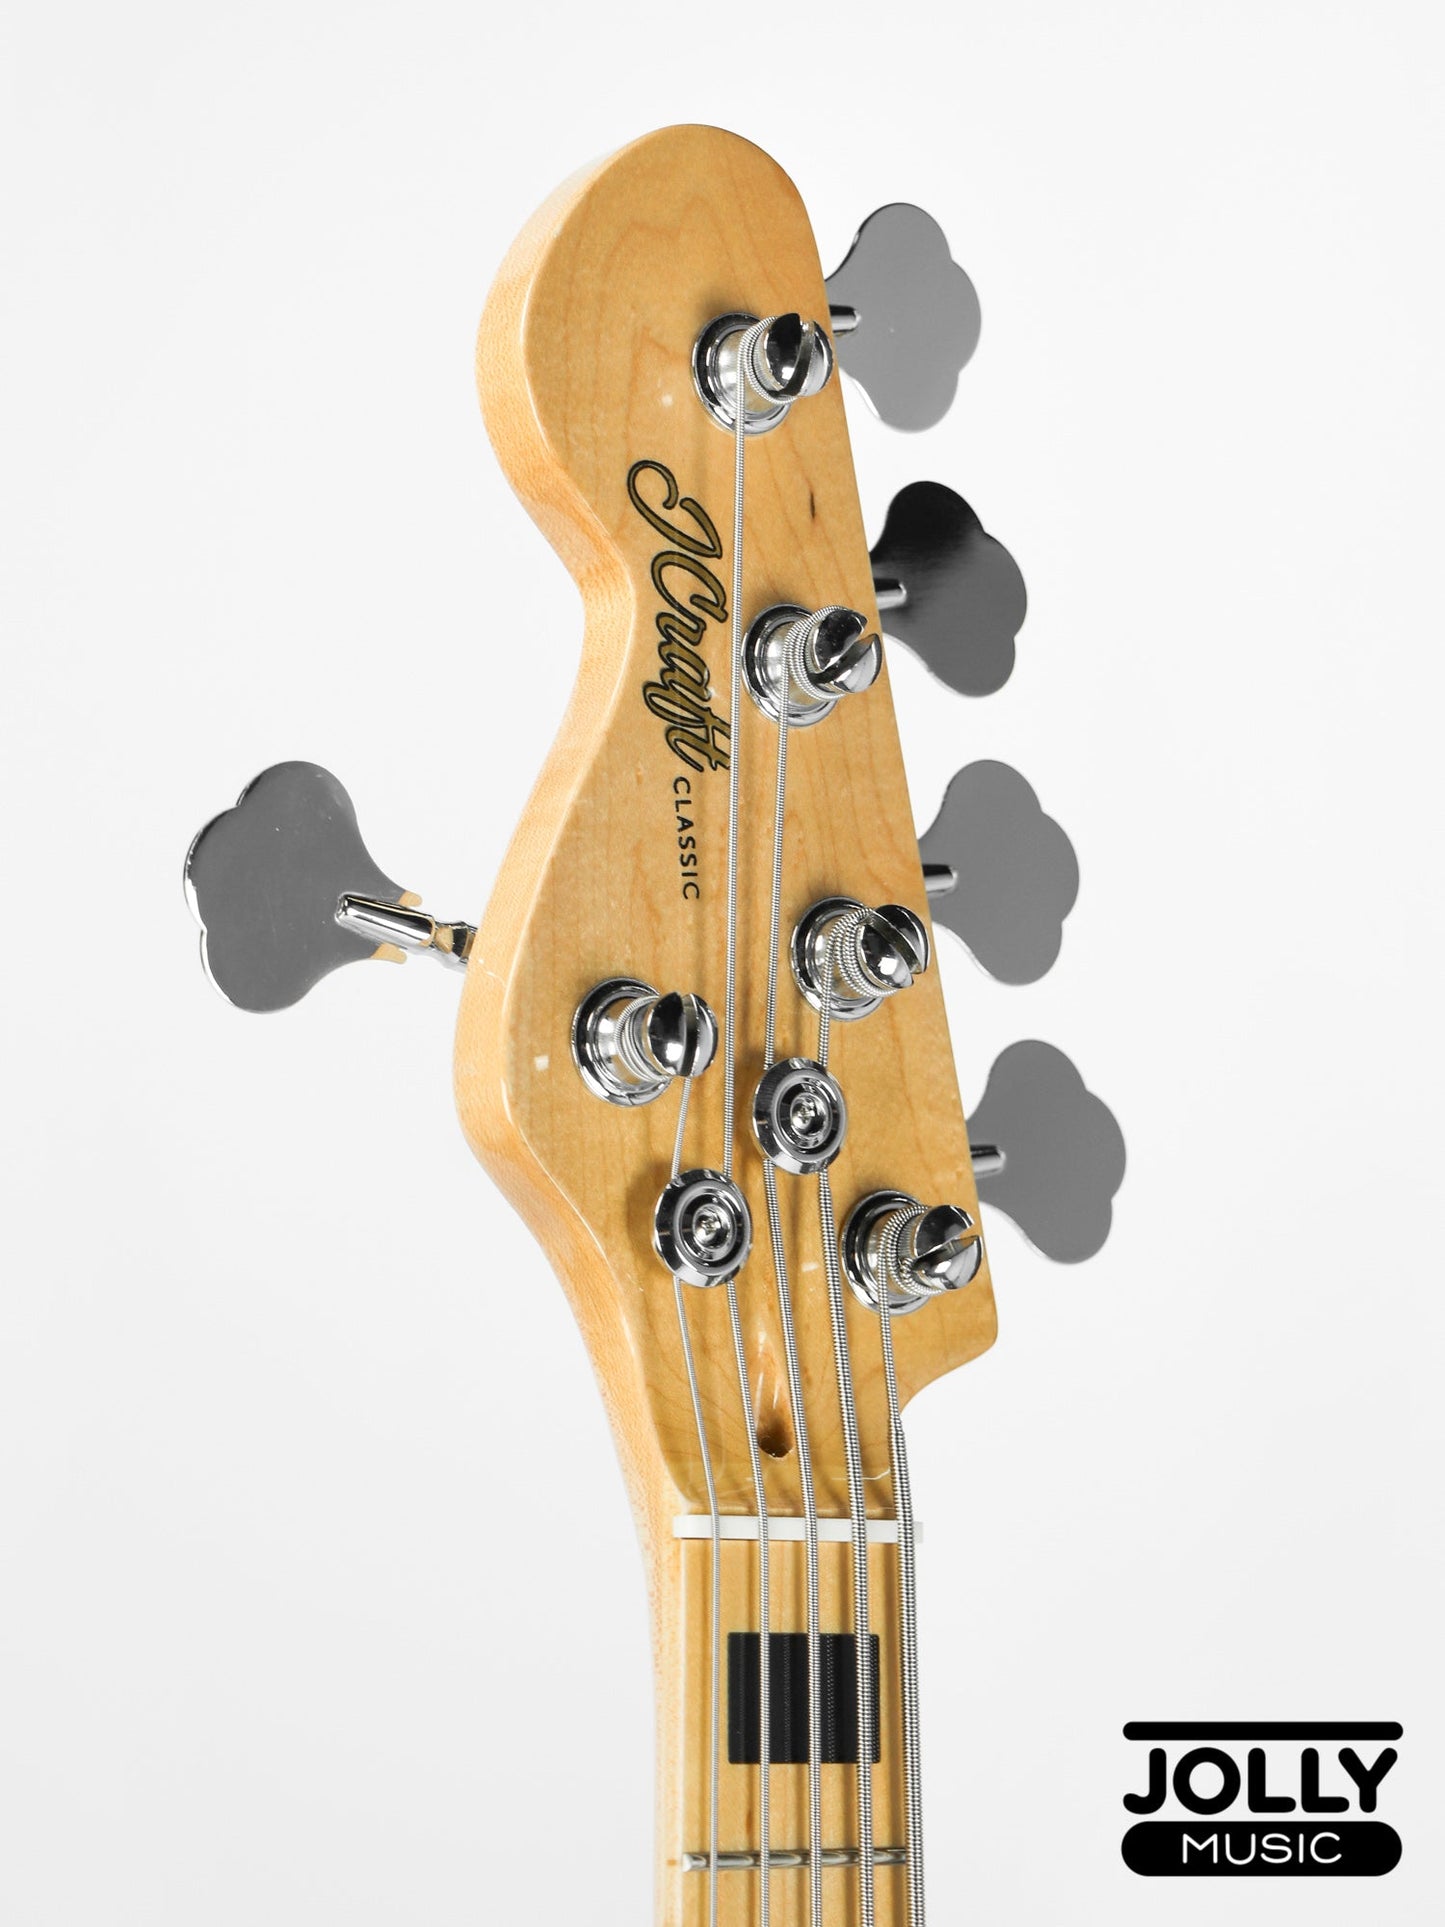 JCraft JB-1 Left Handed J-Offset 5-String Bass Guitar with Gigbag - Black